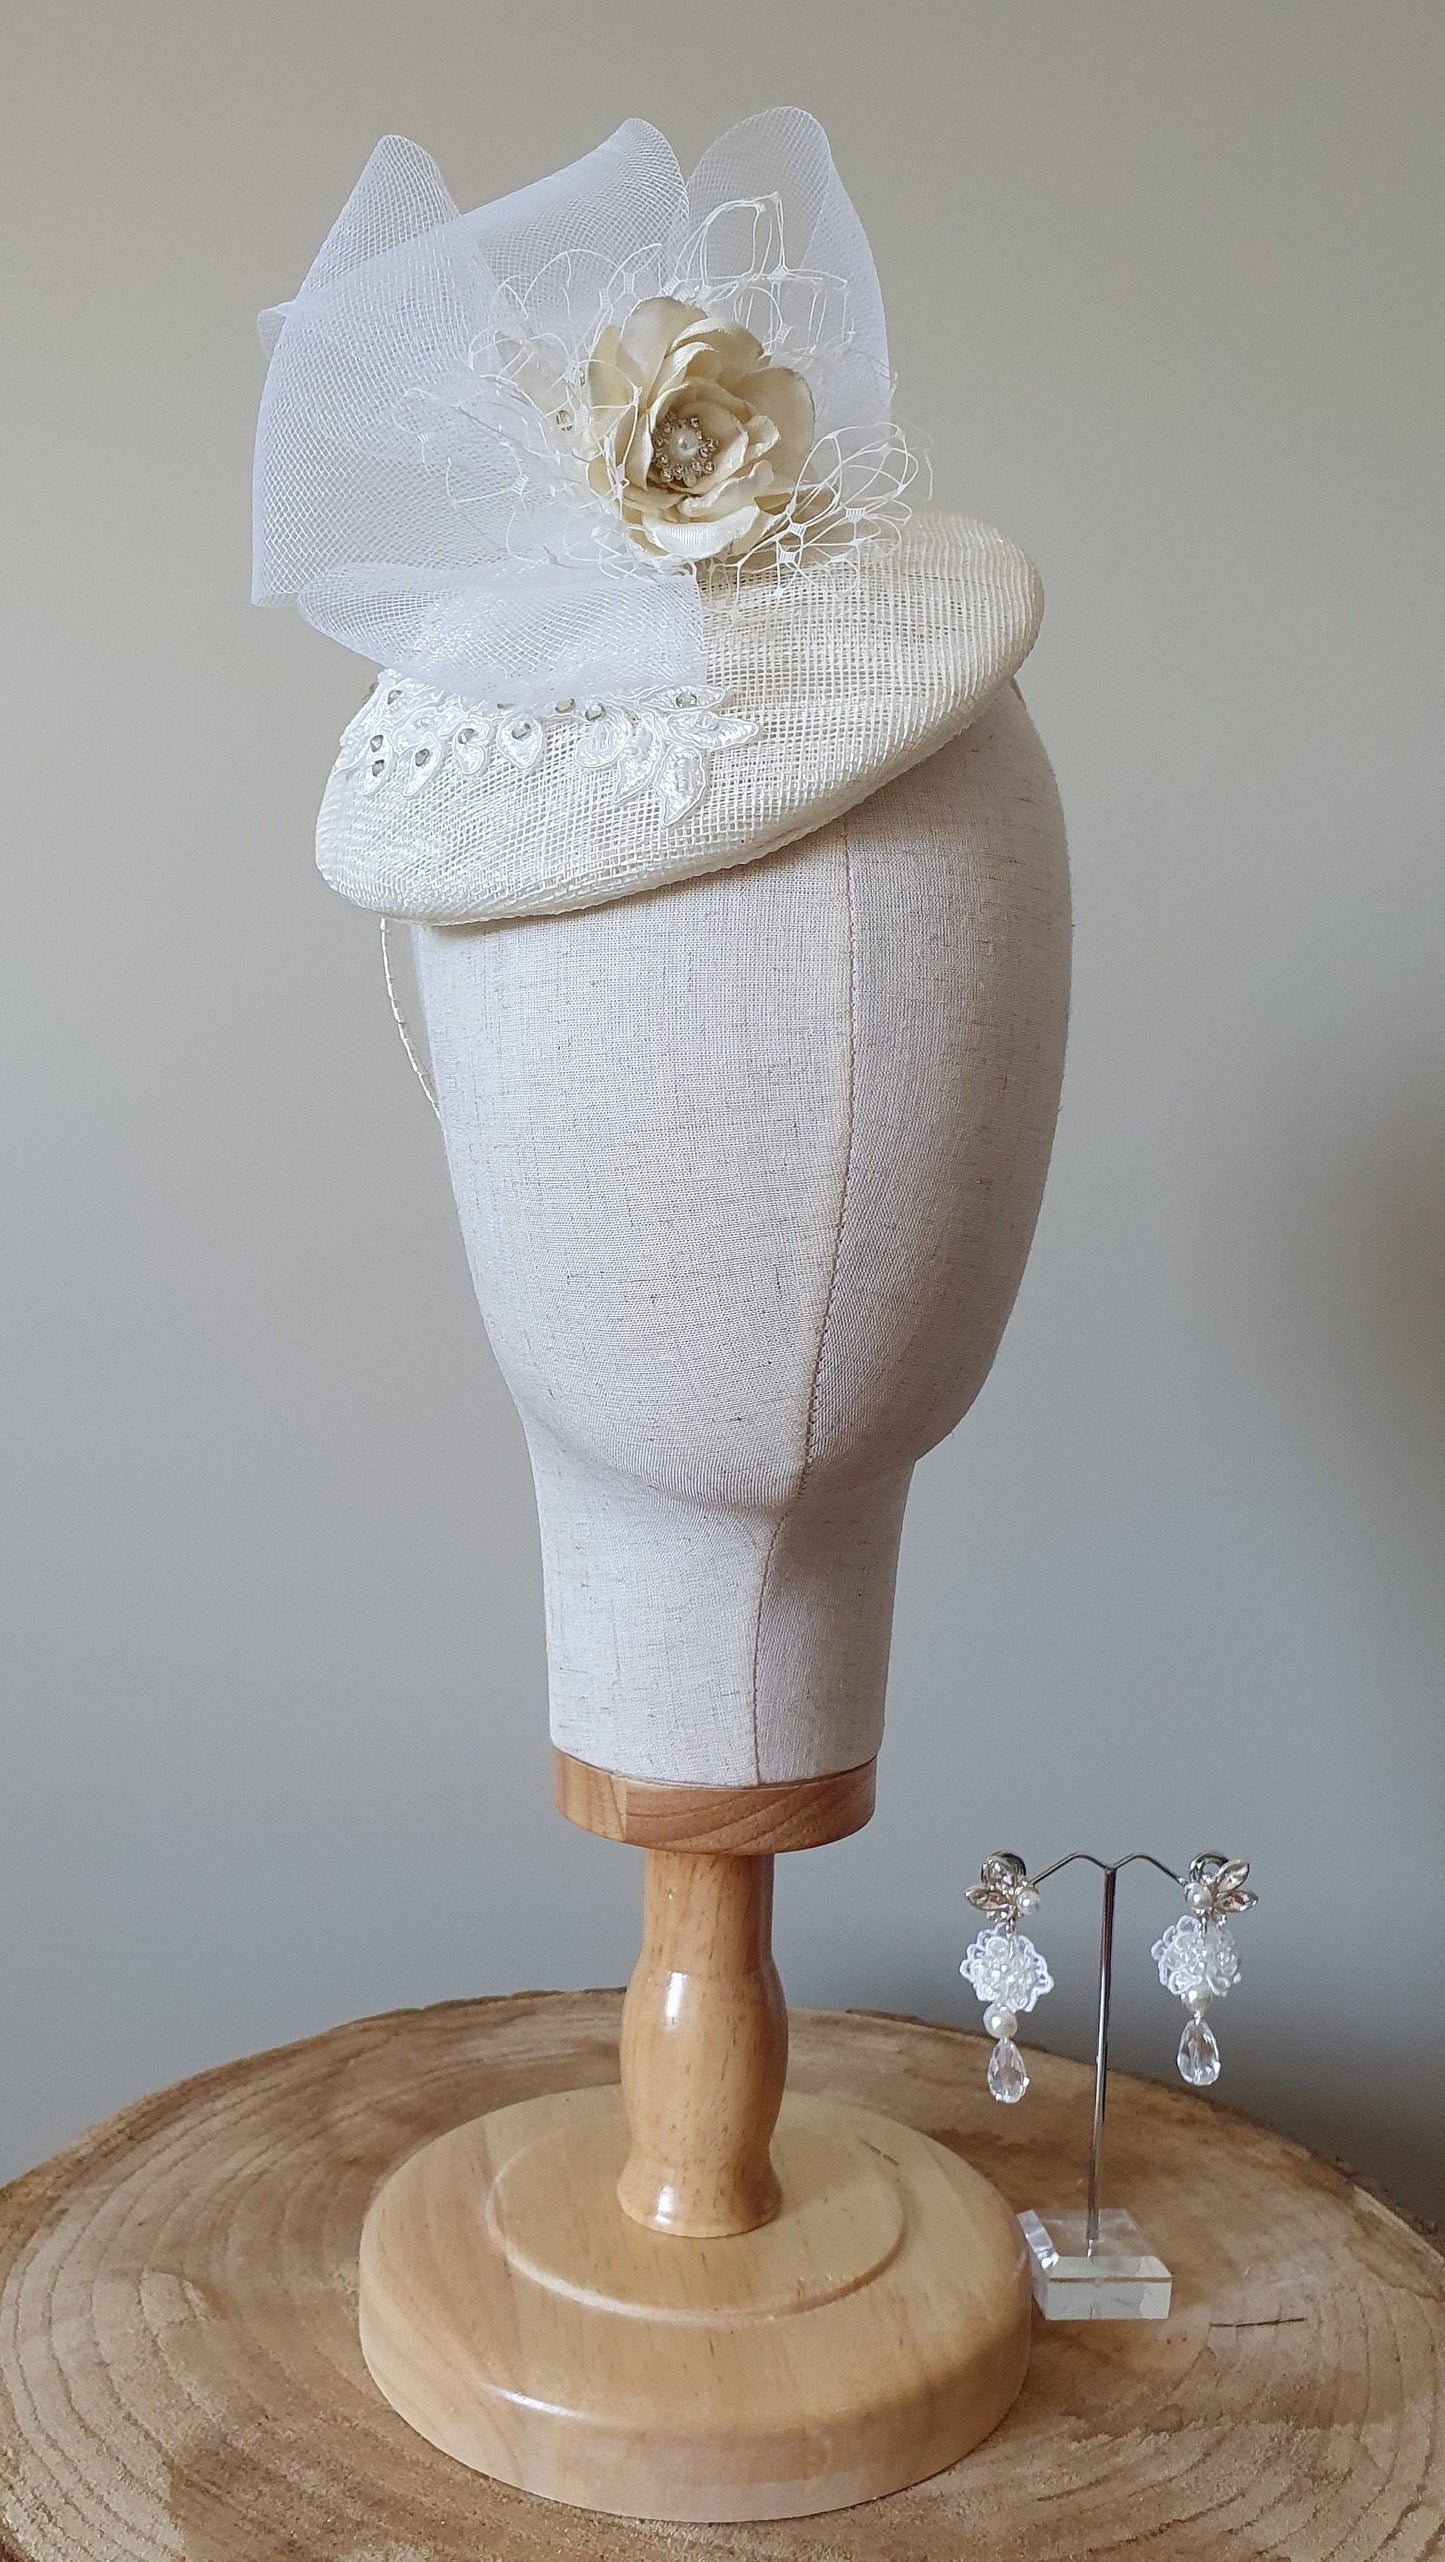 Fascinator handgemaakt in ivoorkleurig sinamay met wit, bruidshoofdtooi - Perfect voor bruiloften en feestelijke gelegenheden